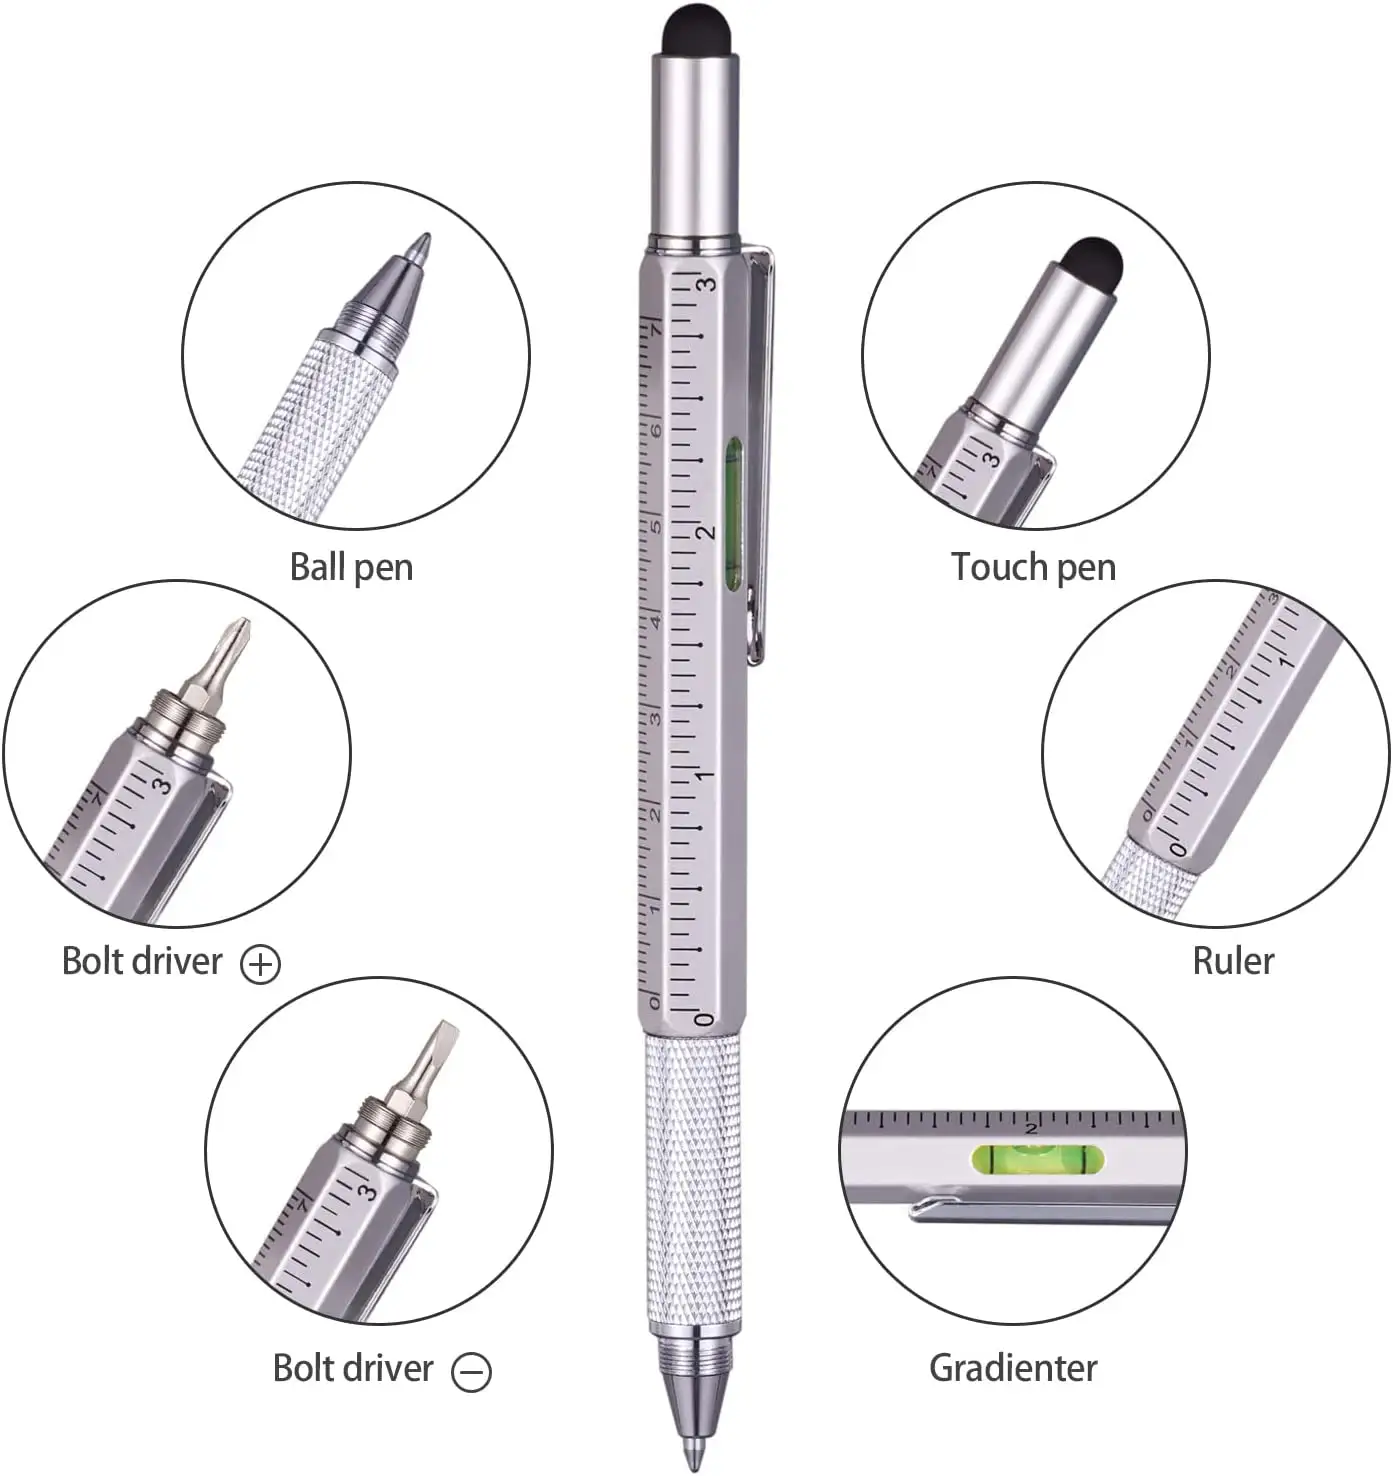 6 ב 1 רב כלי עט פונקציונלי טק כלי עט מתכת stylus עט כדורי עם רמת ומברגים מותאם אישית לוגו